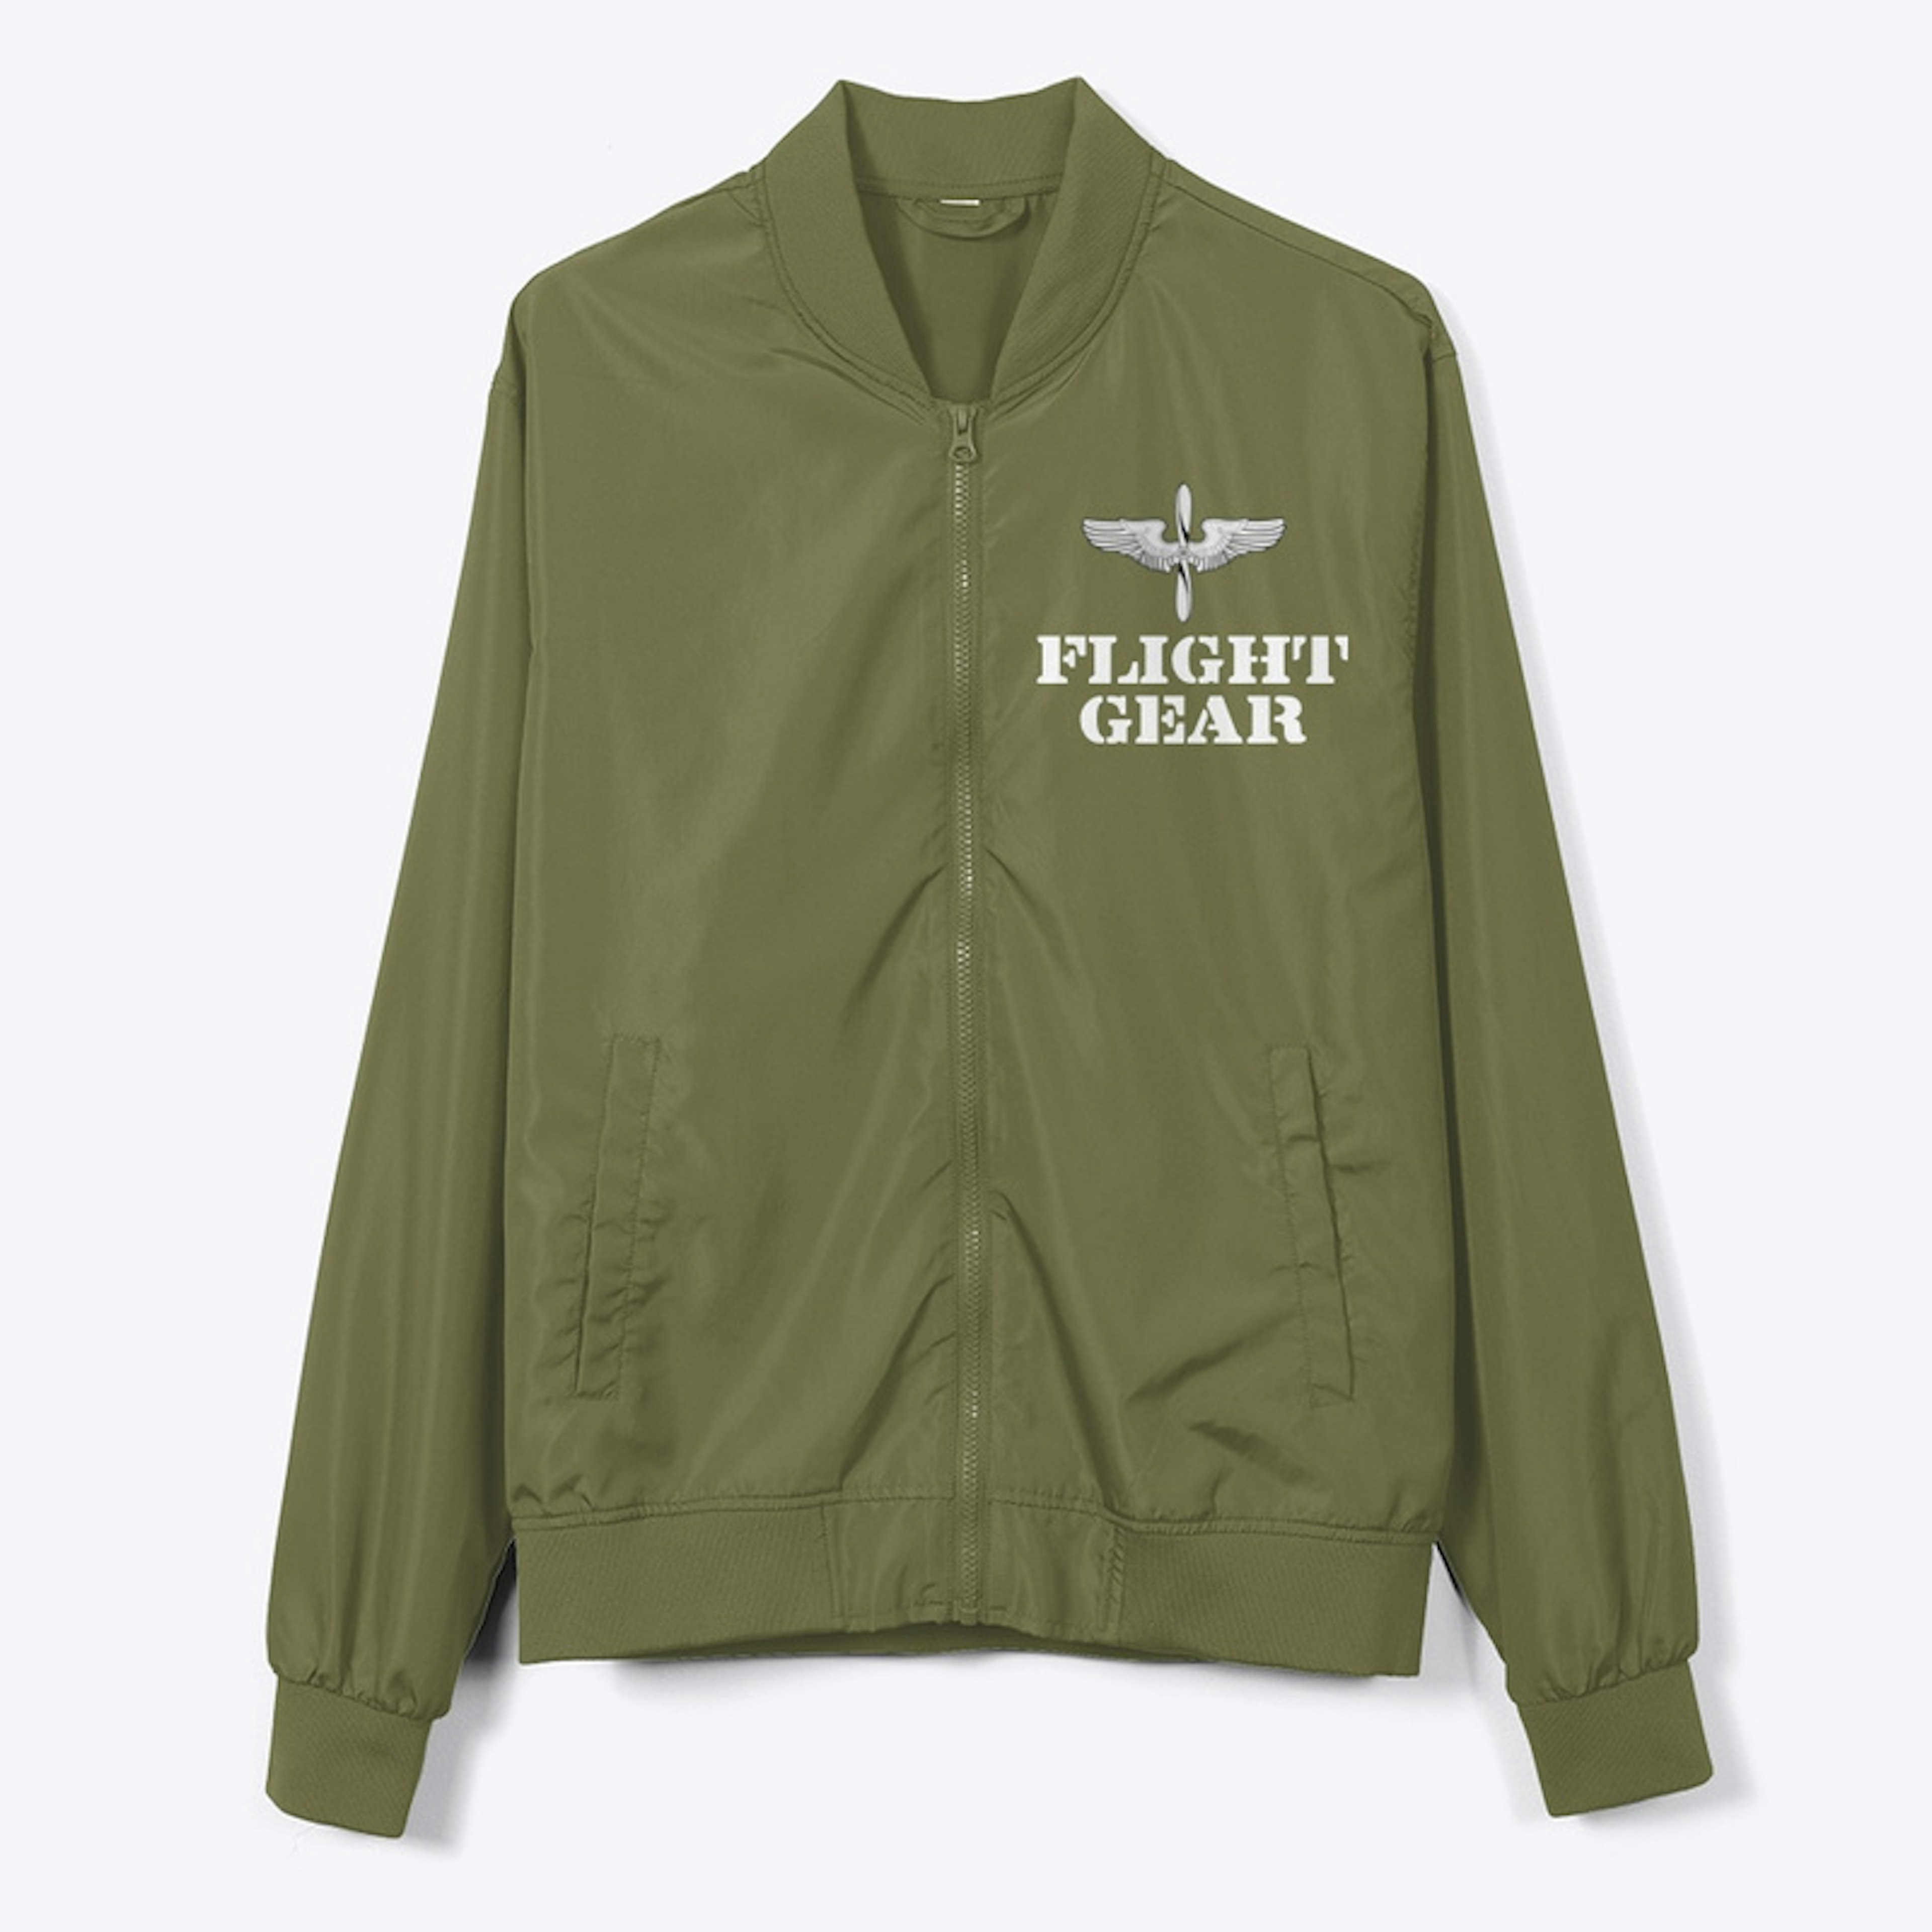 Flight jacket